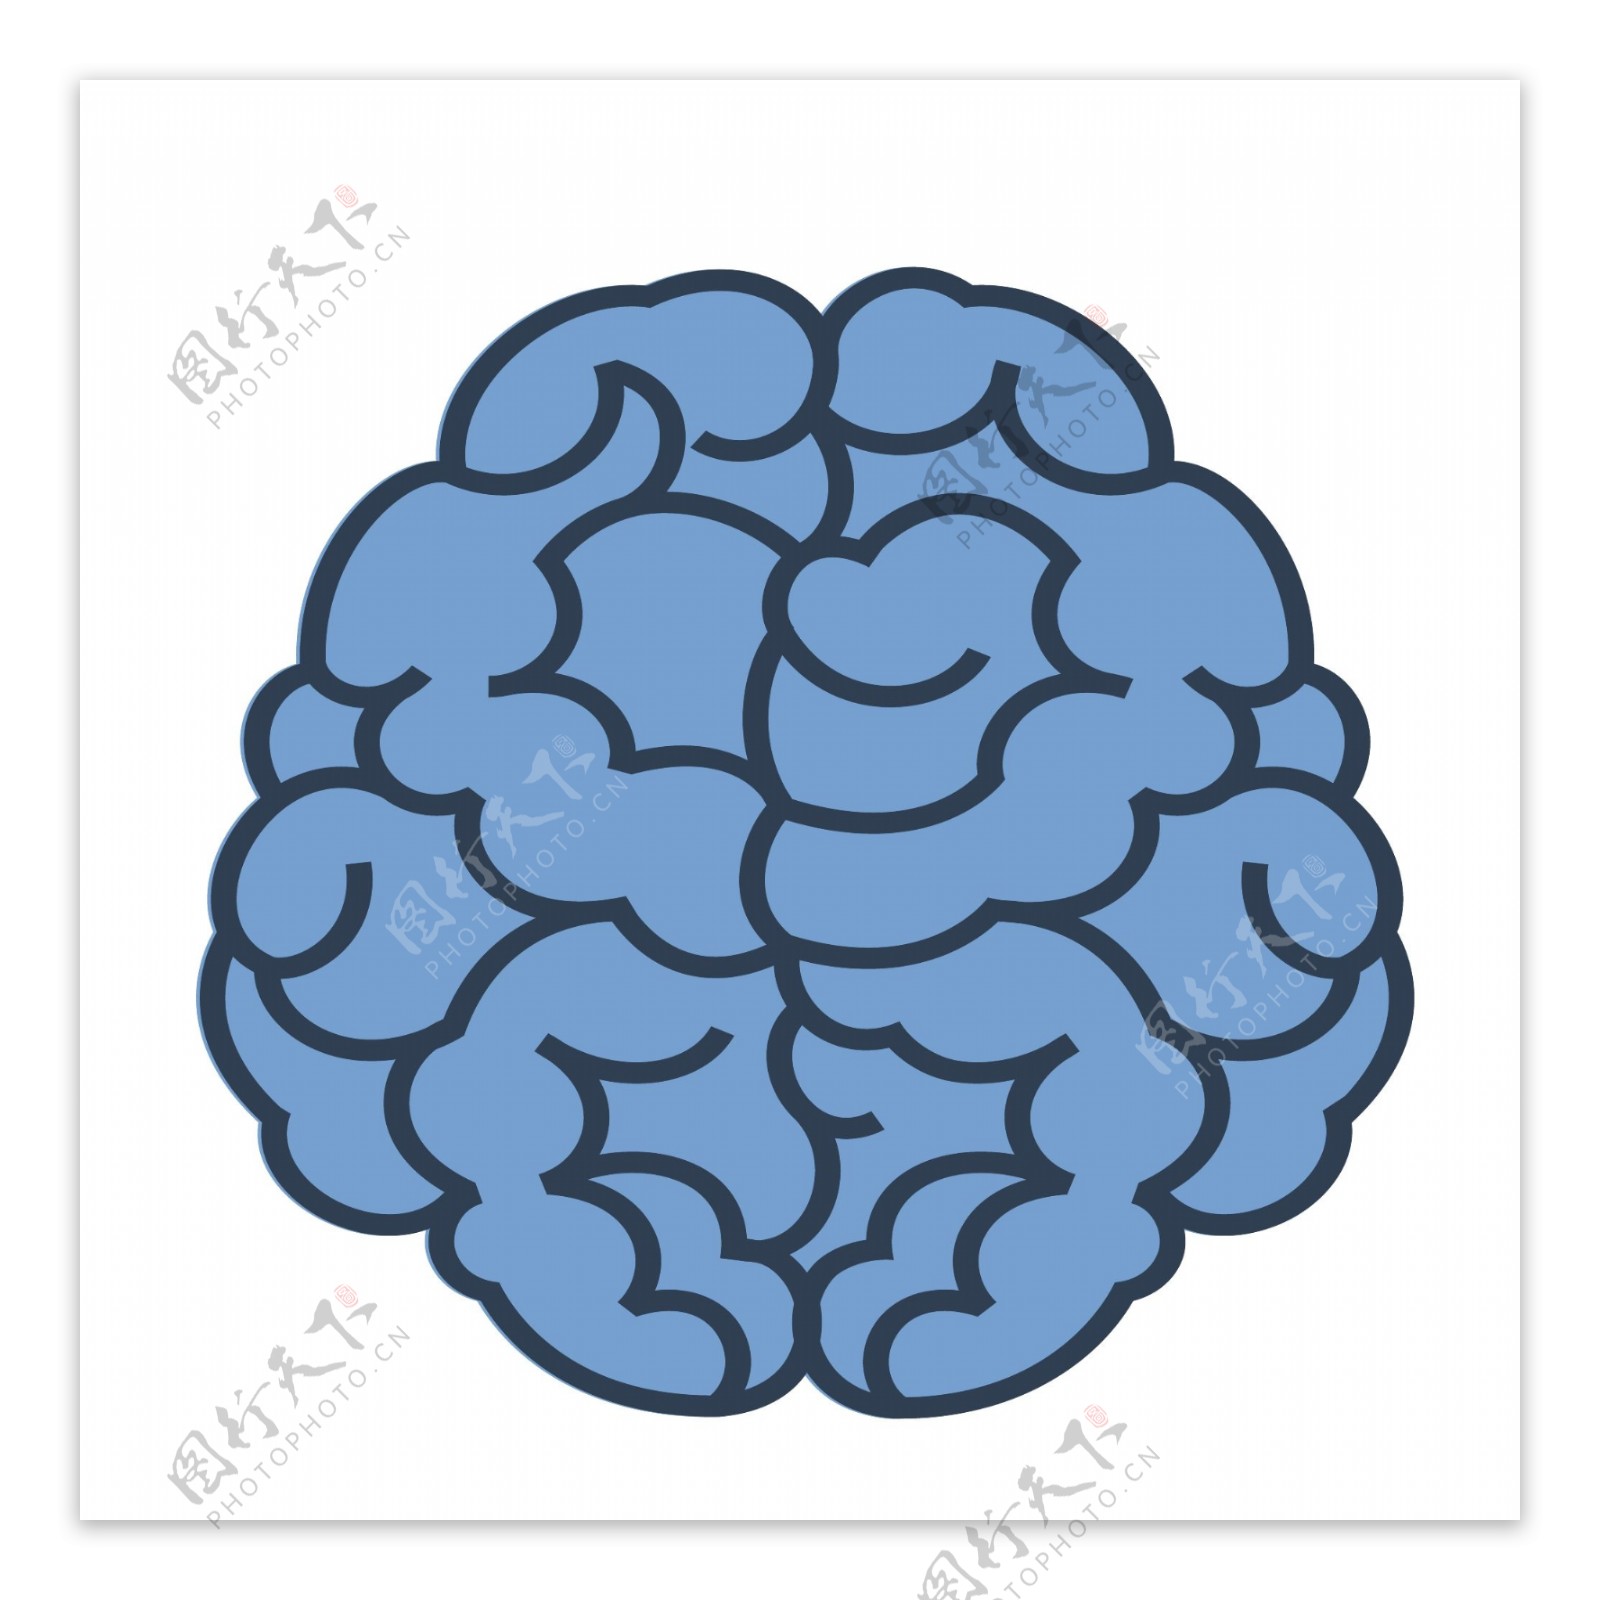 蓝色线条大脑插画